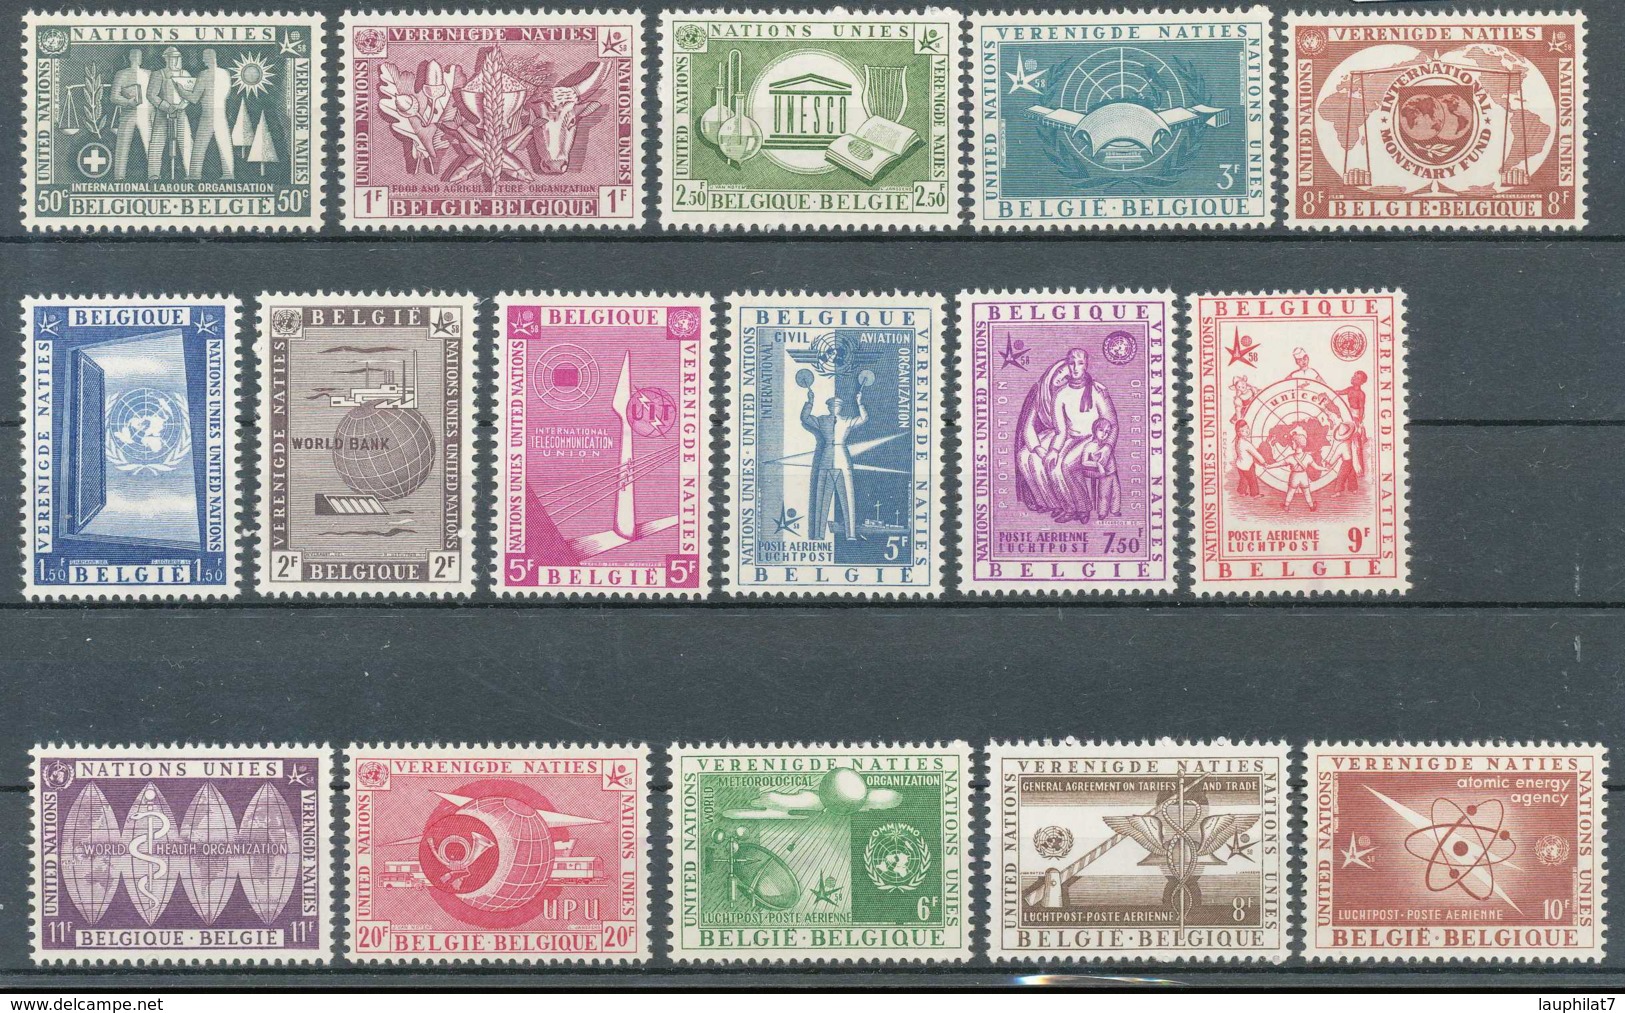 [600090]Belgique 1958, Exposition Universelle De Bruxelles 1958, Avec Aériens, Les 2 Séries Complètes - 1958 – Bruxelles (Belgique)